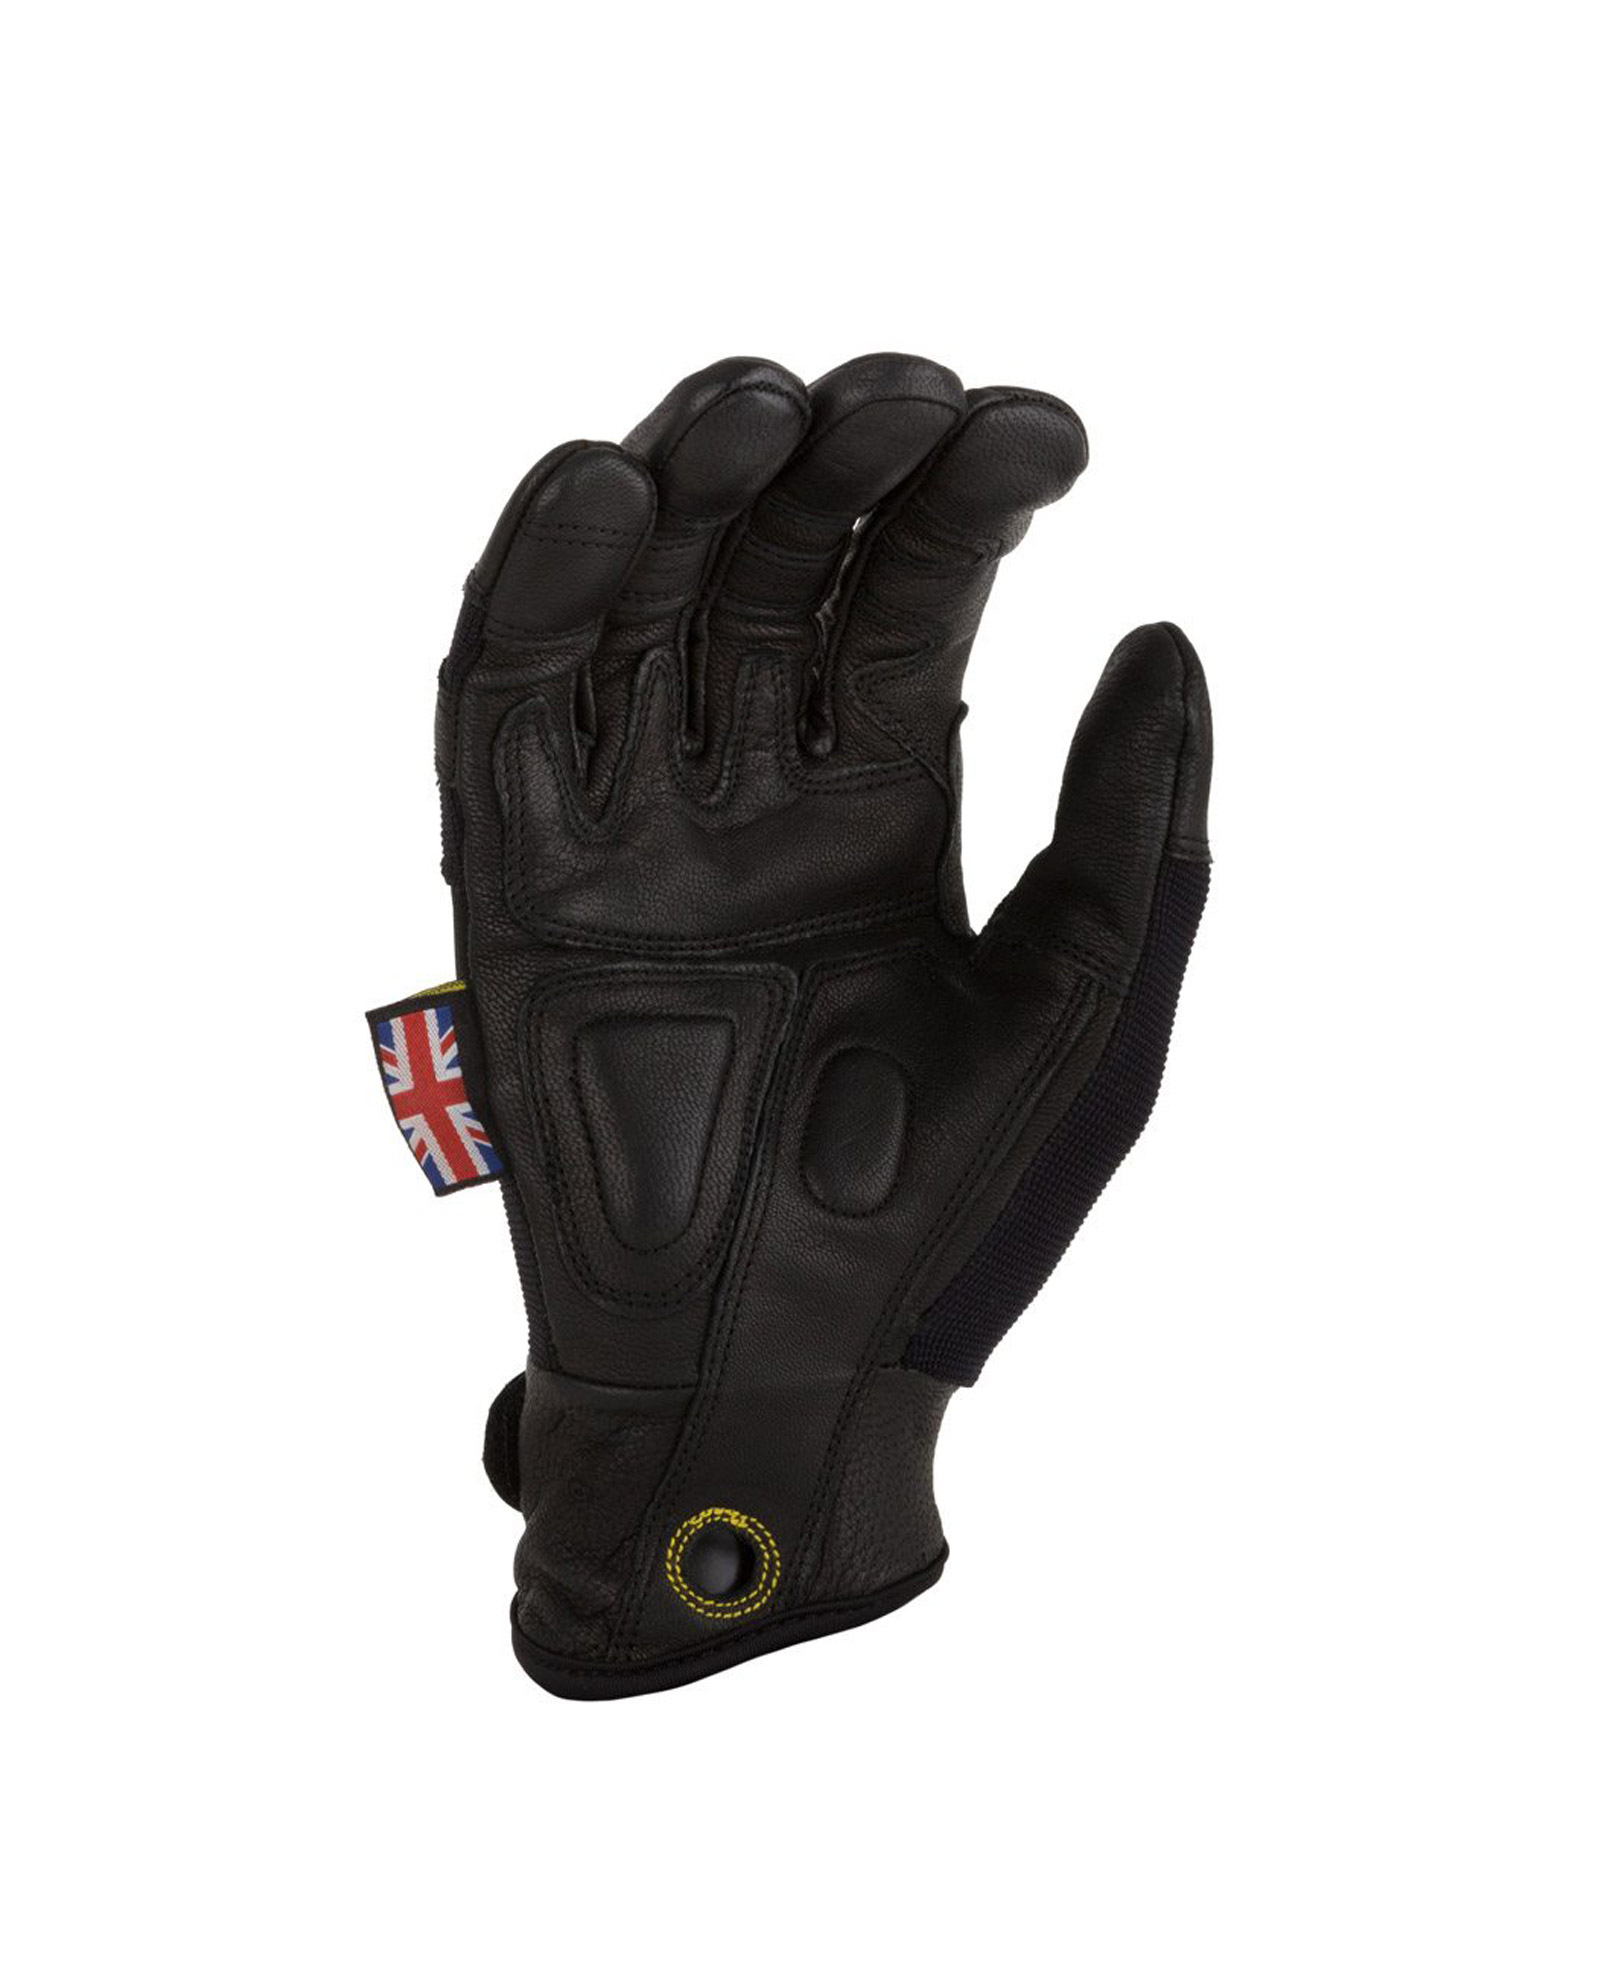 dirty rigger framer gloves